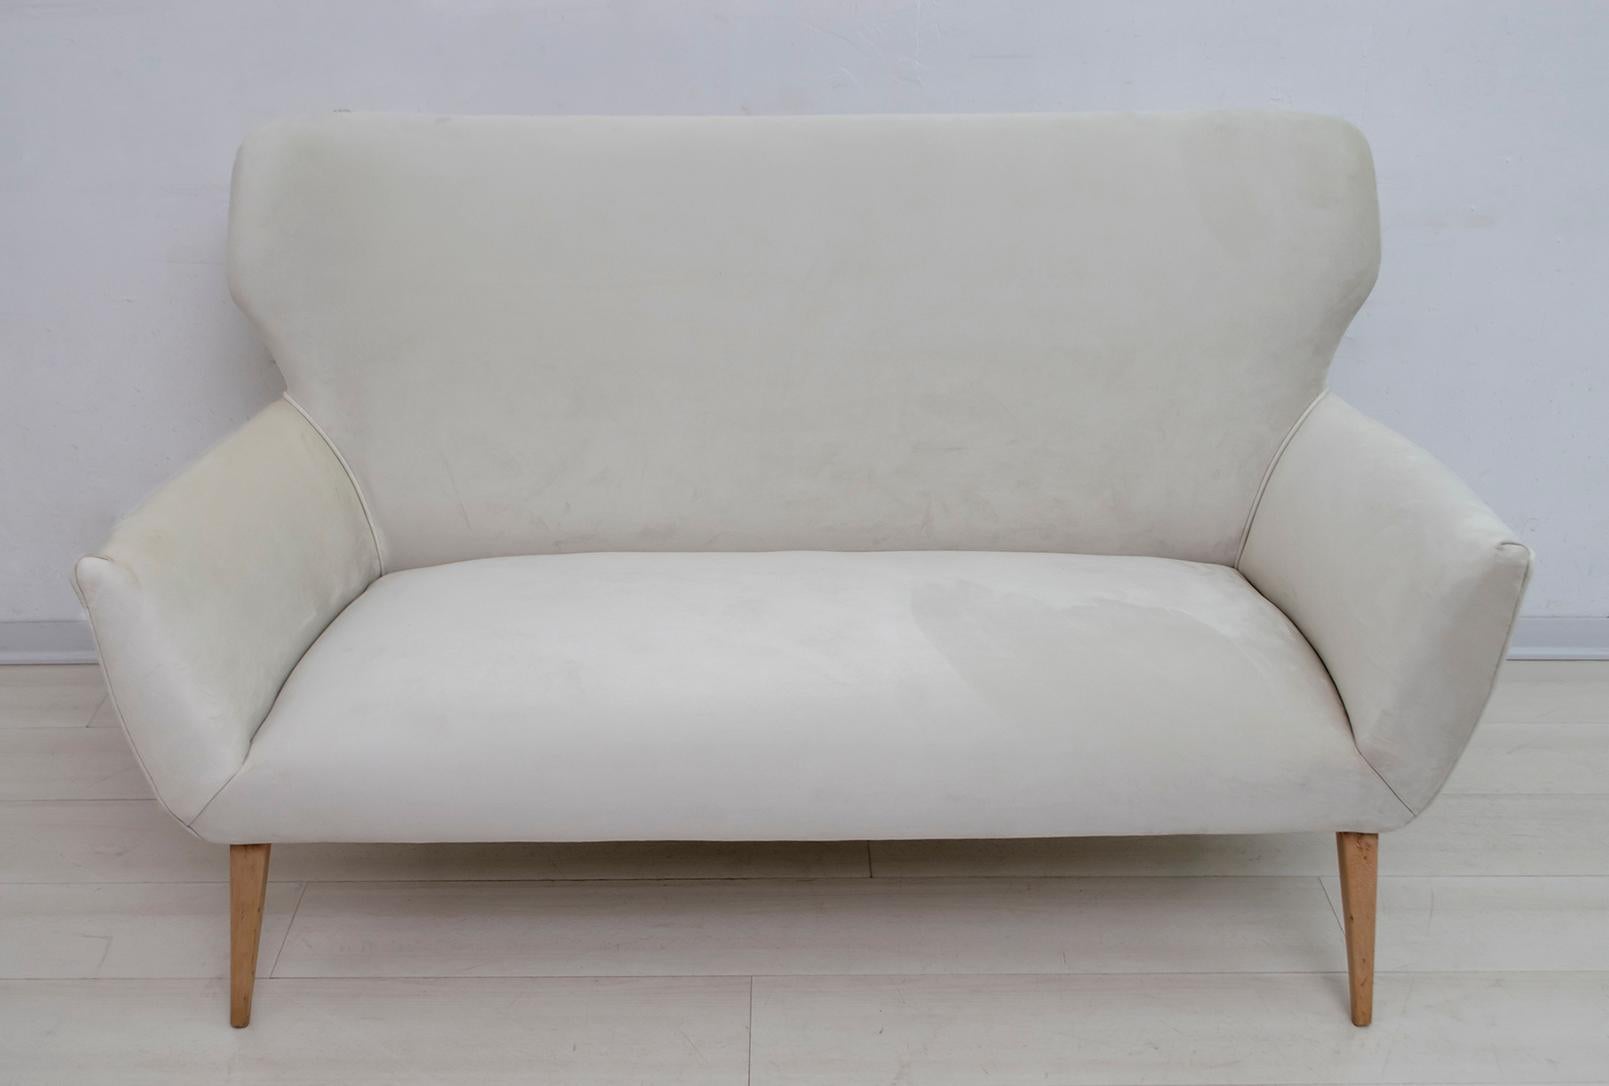 Kleines Sofa im Stil von Gio Ponti, italienische Produktion aus den 1950er Jahren, 
gepolstert mit cremefarbenem Samt, Füße aus Buche natur.